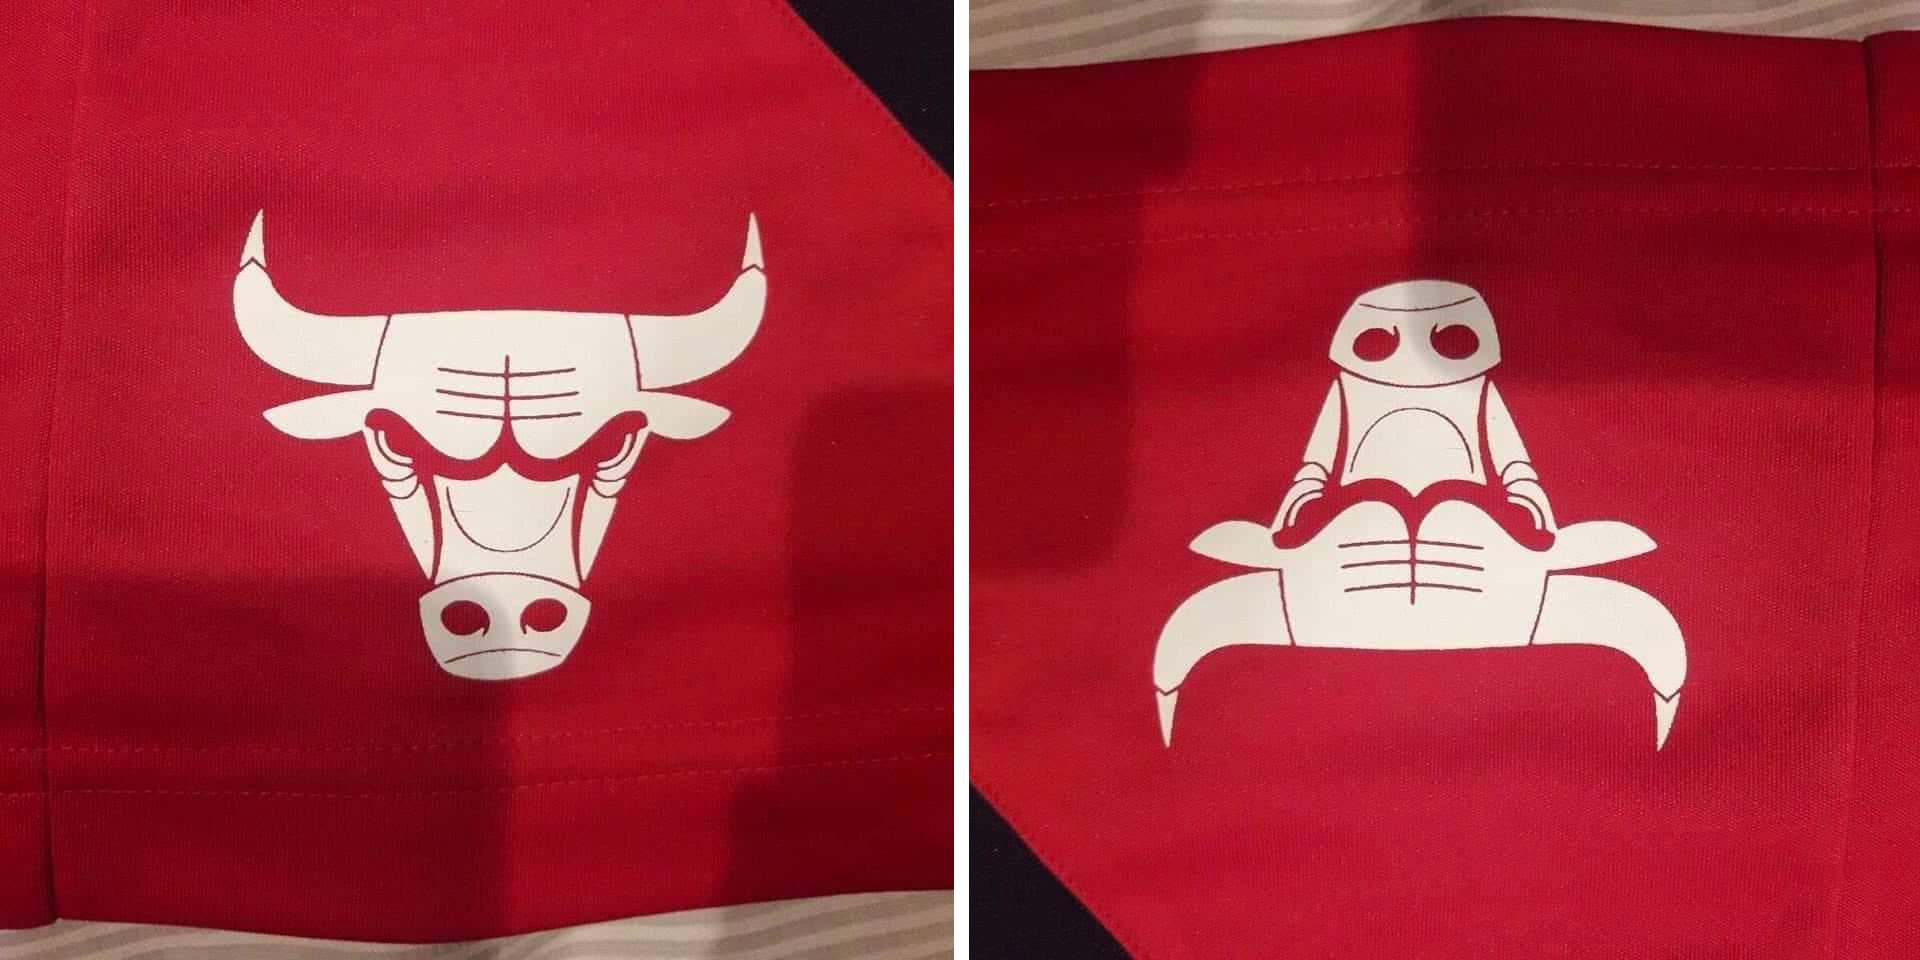 Chicago Bulls Logo Upside Down